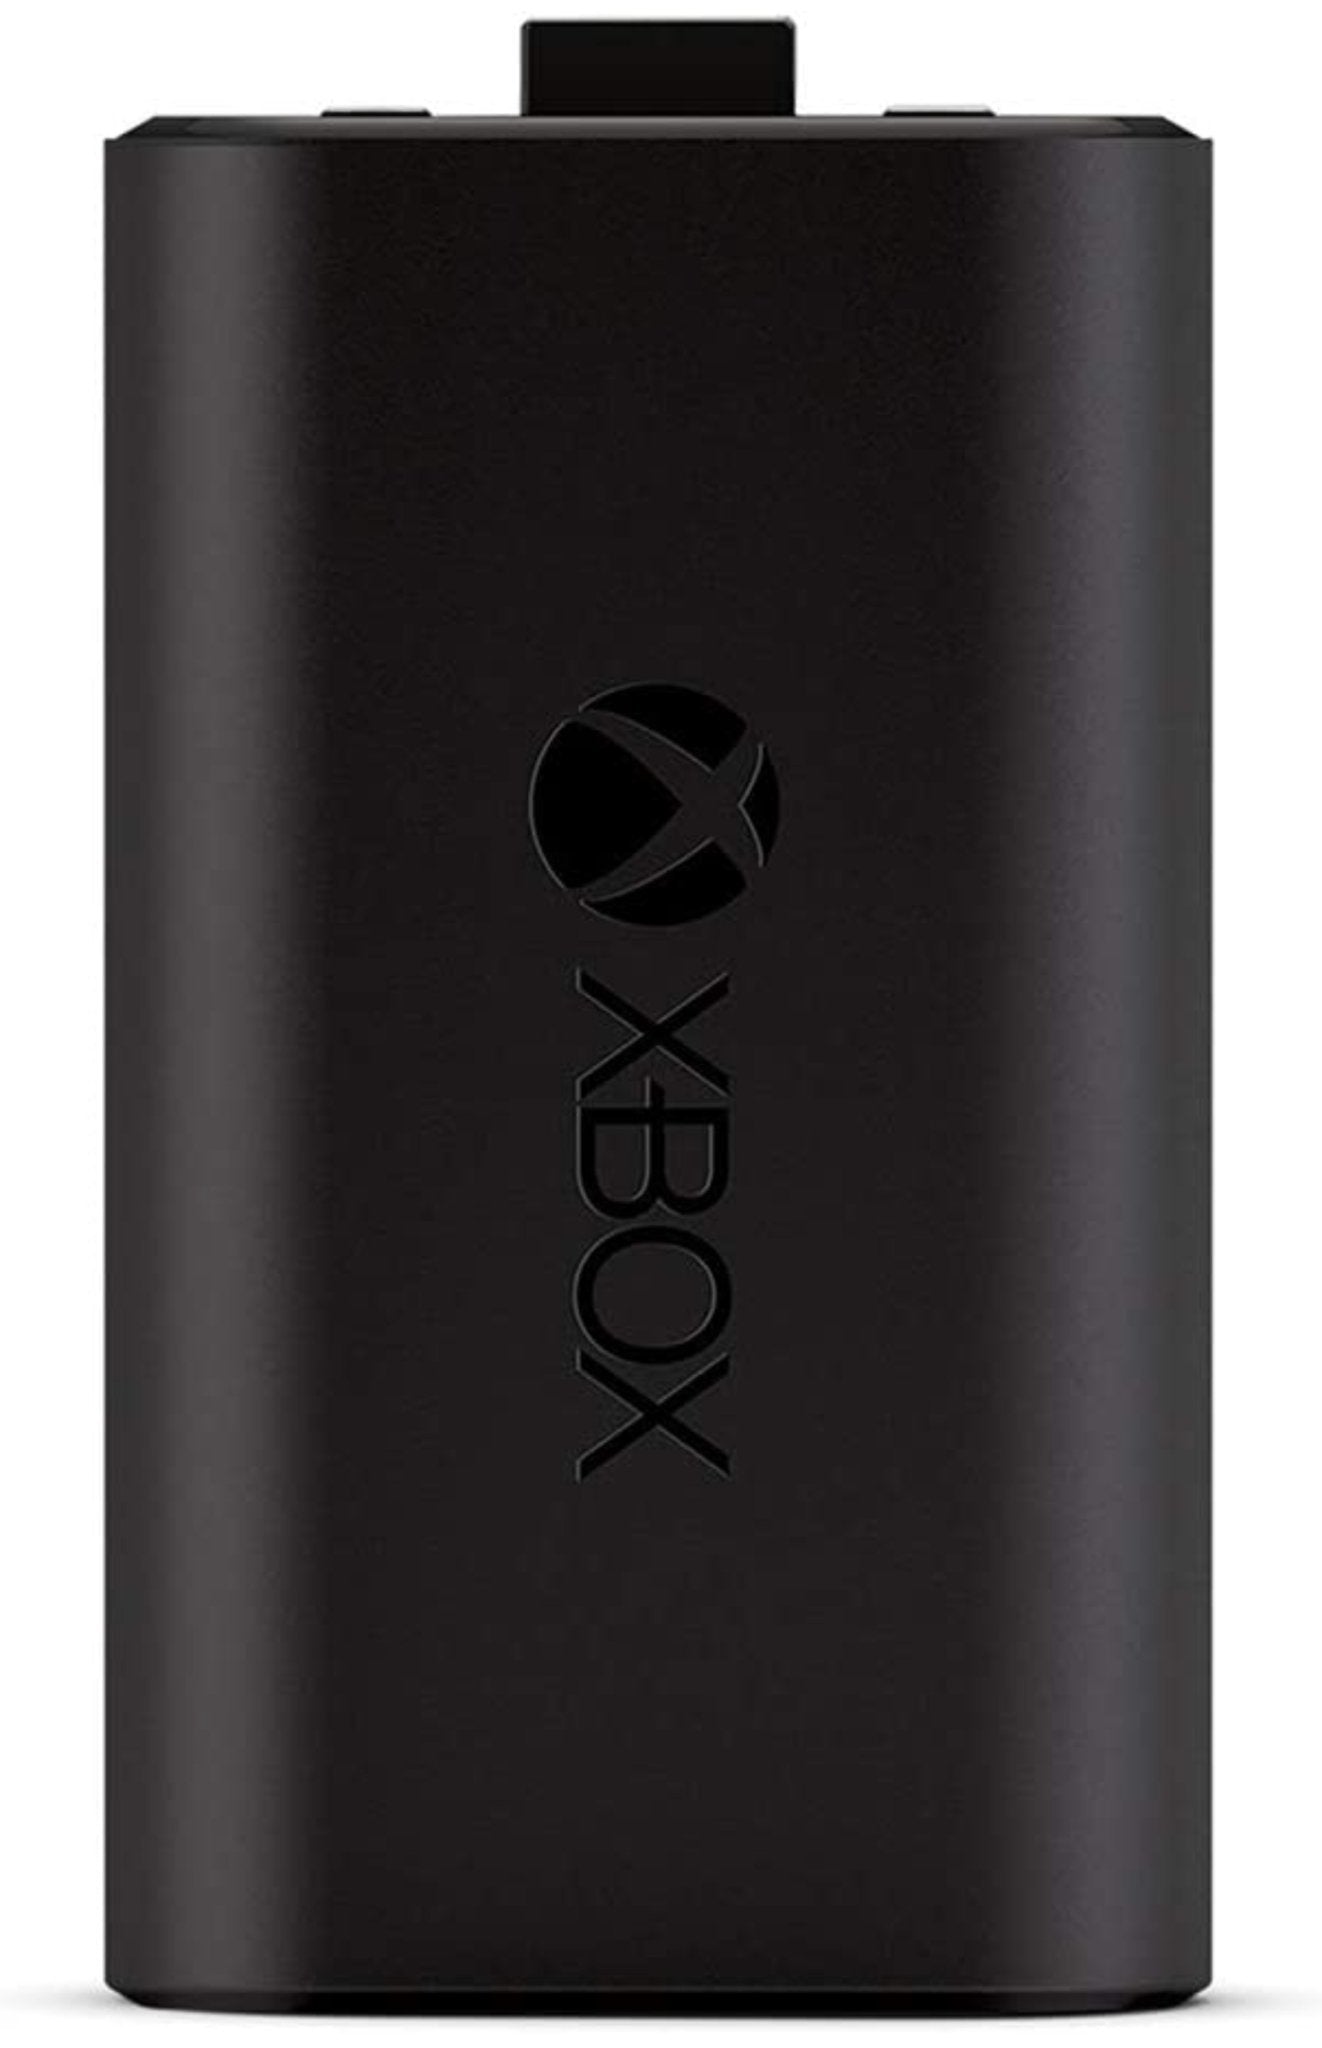 Paquete de batería recargable Xbox de 3x2600mAh, Guatemala